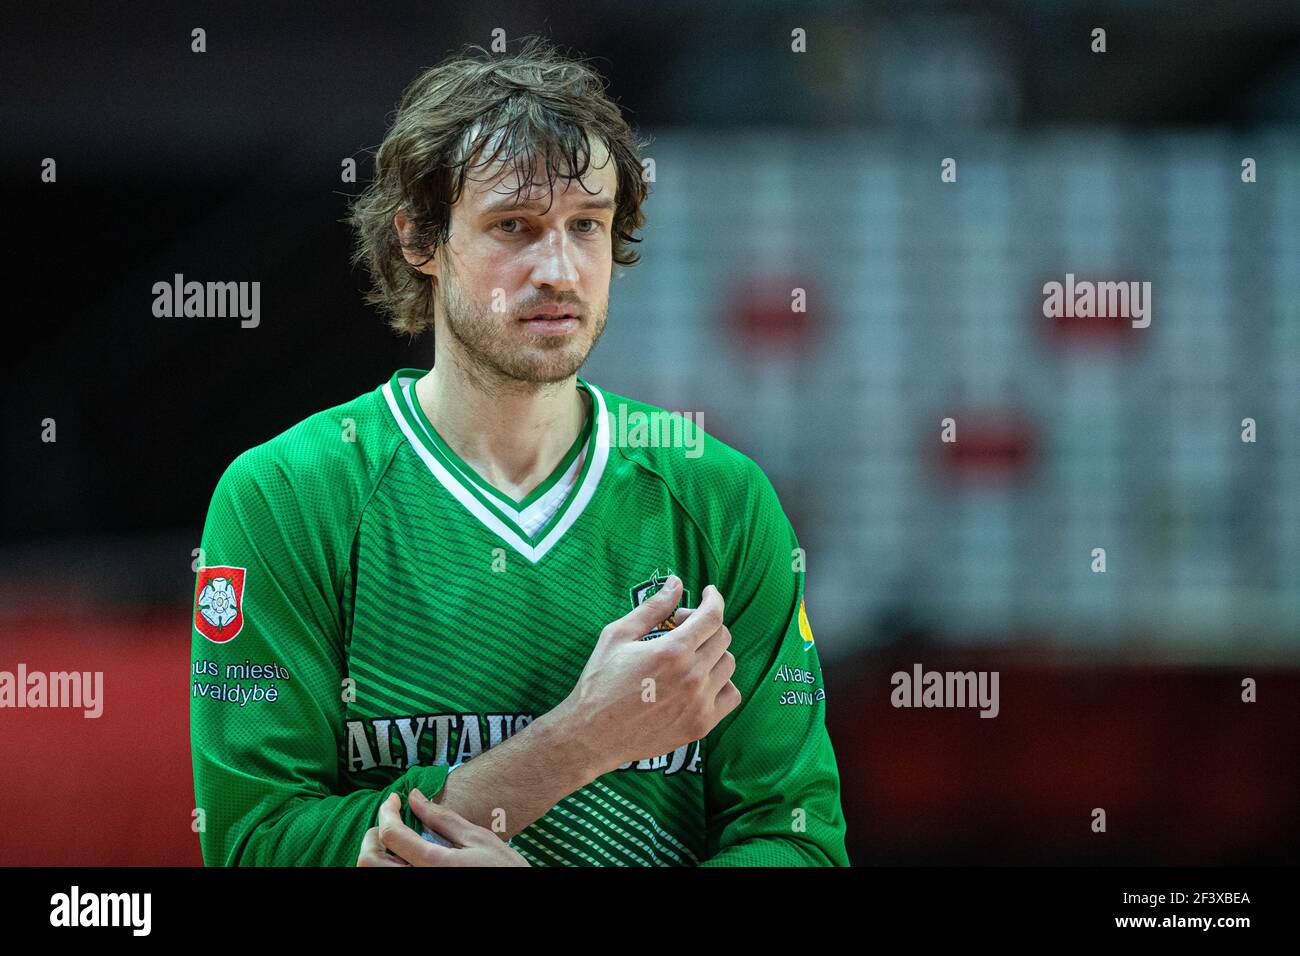 Simas Jasaitis - Lithuanian basketball player Stock Photo - Alamy